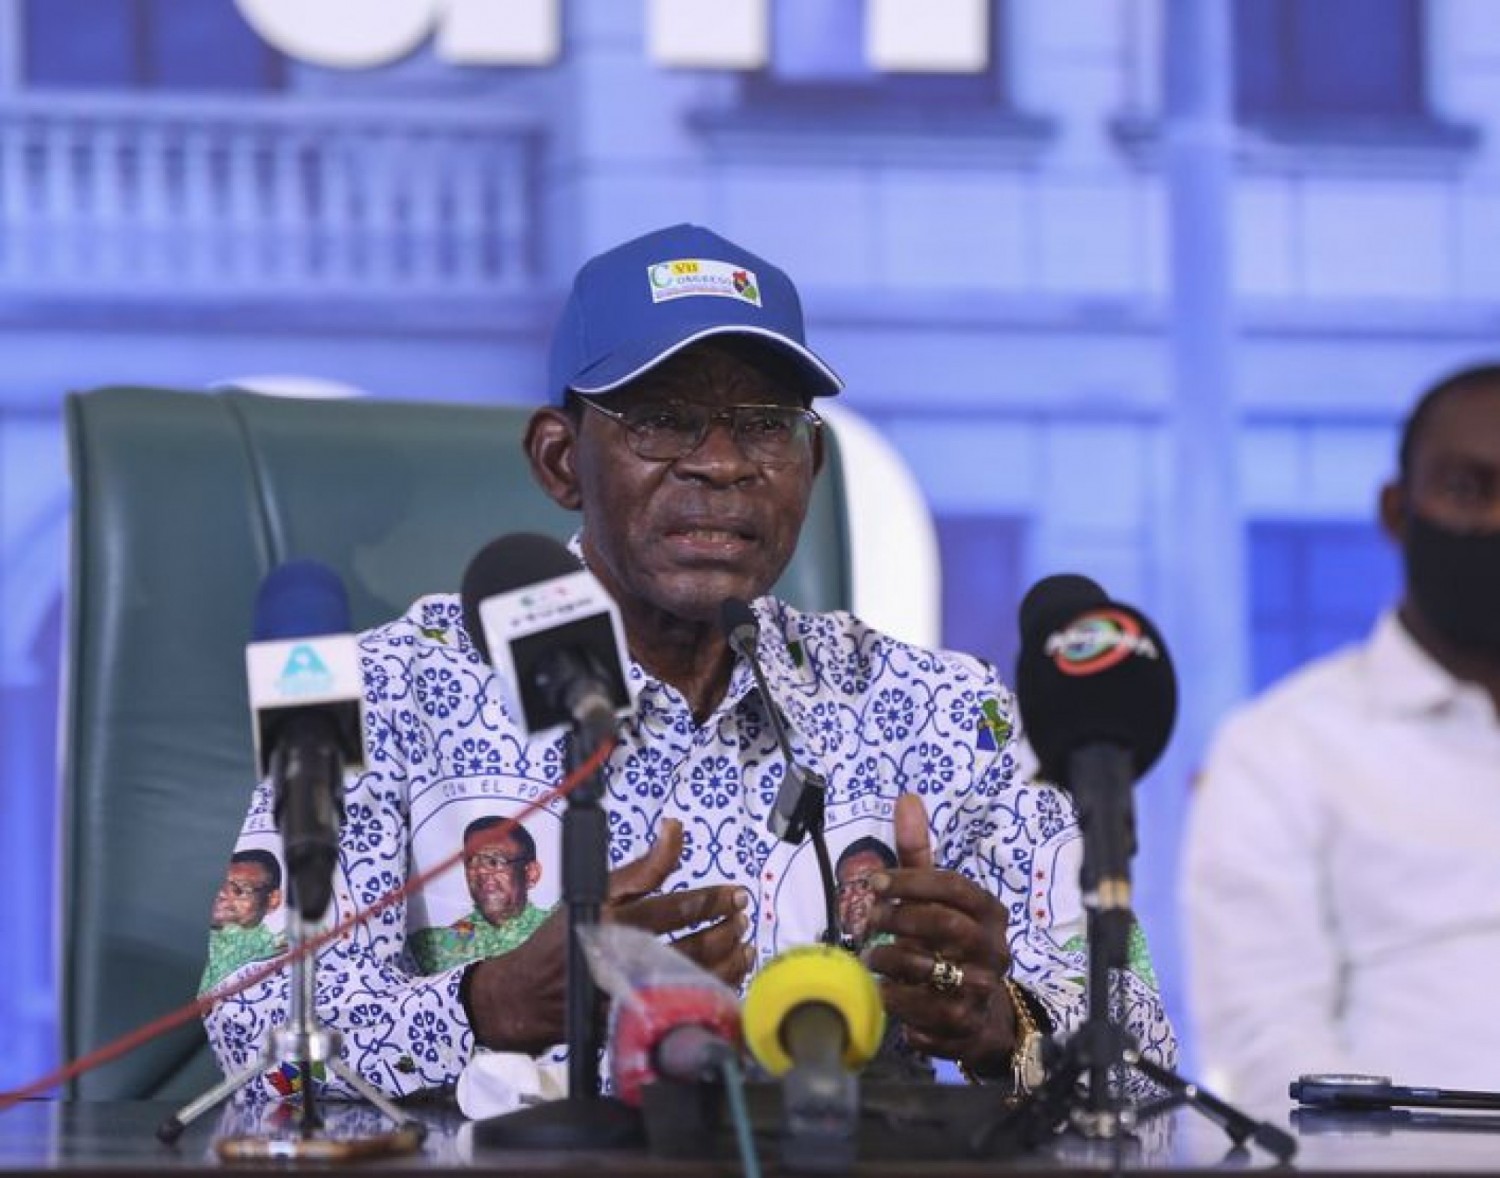 Guinée Equatoriale : Présidentielle sans grand enjeu, Obiang assuré d' être réélu, la diaspora s'alarme